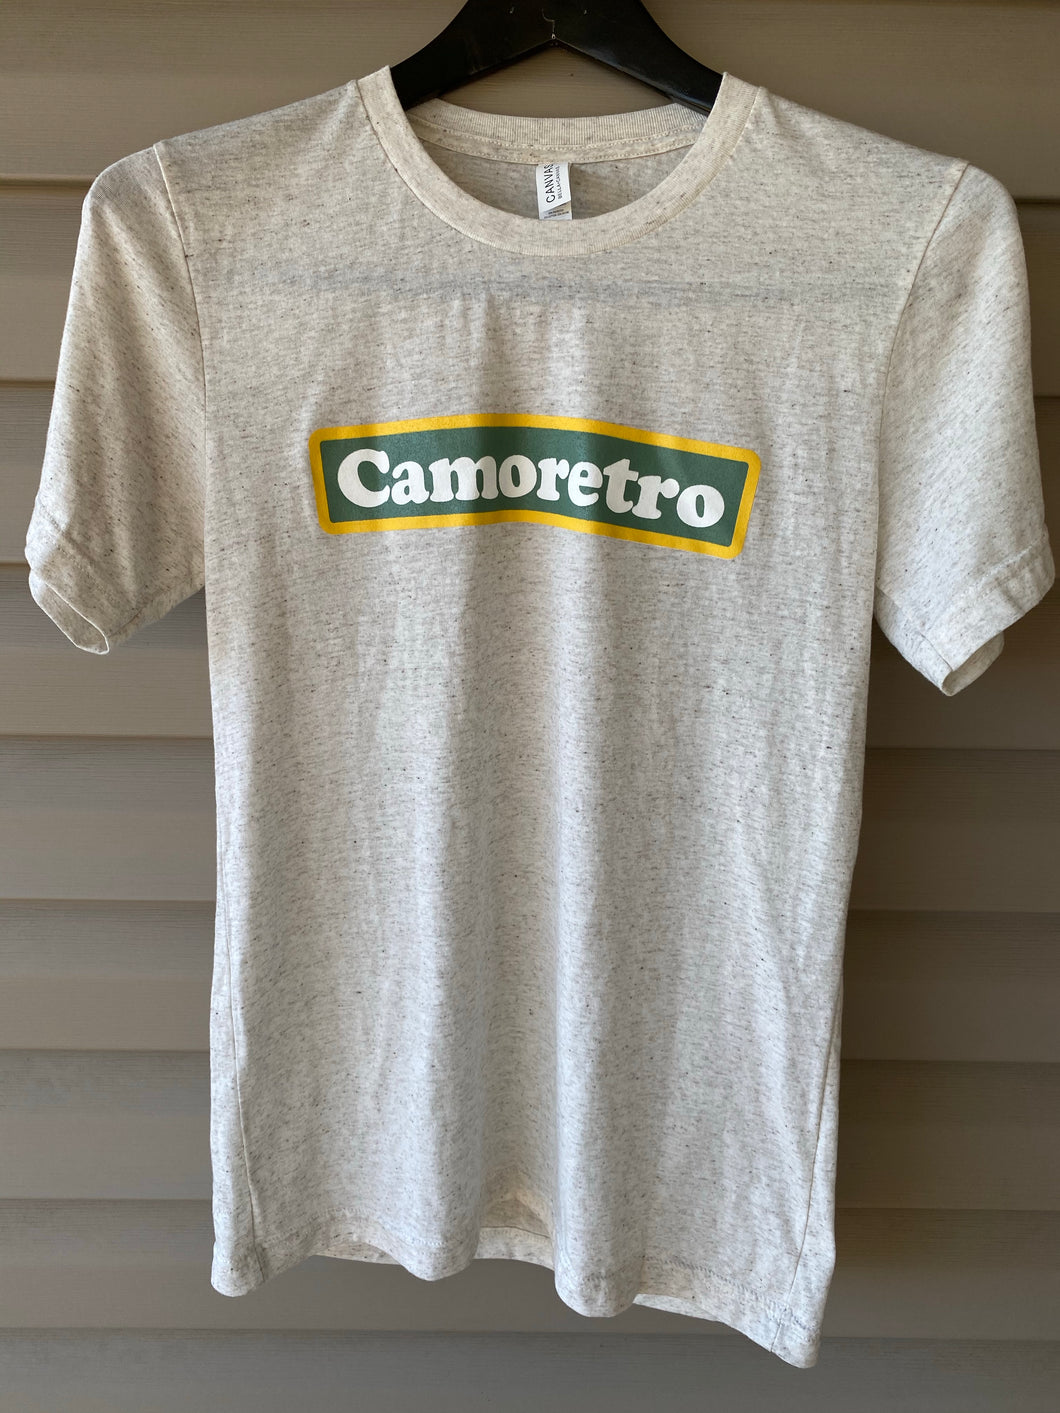 Camoretro Shirt (S)